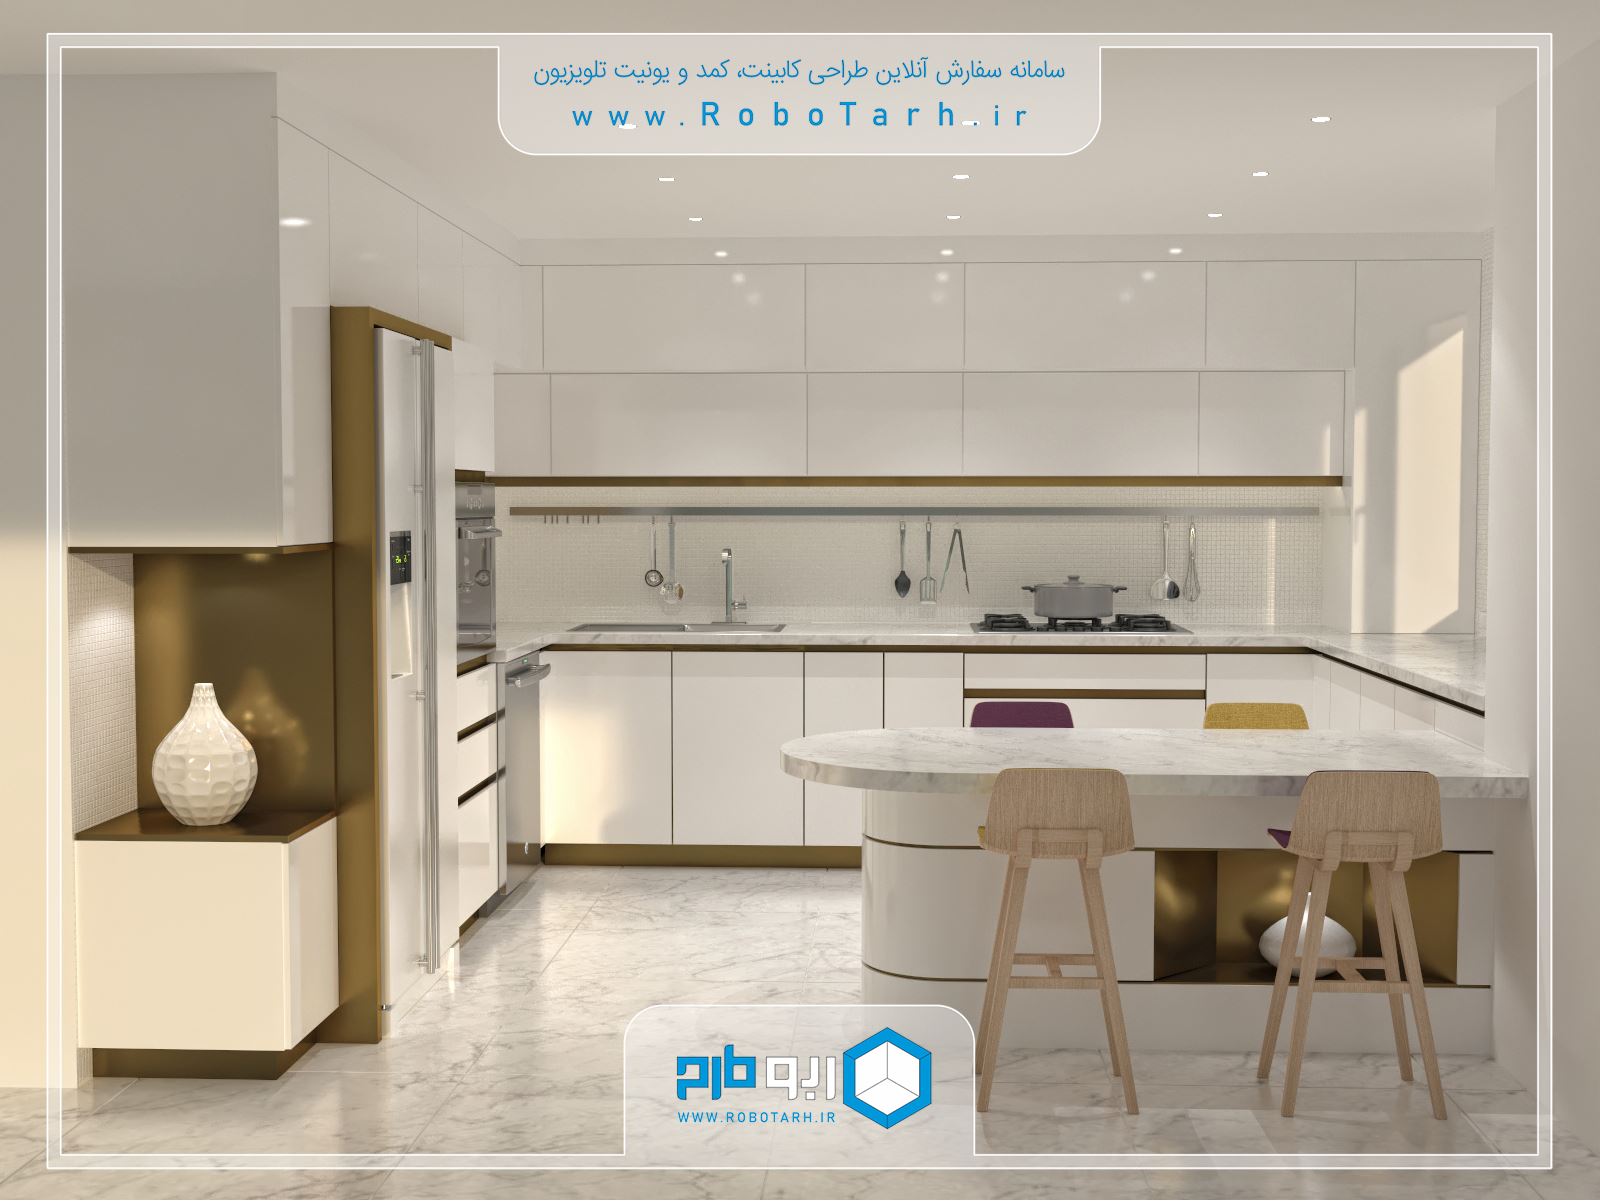 طراحی زیبا کابینت آشپزخانه مدرن با رنگ سفید و طلایی